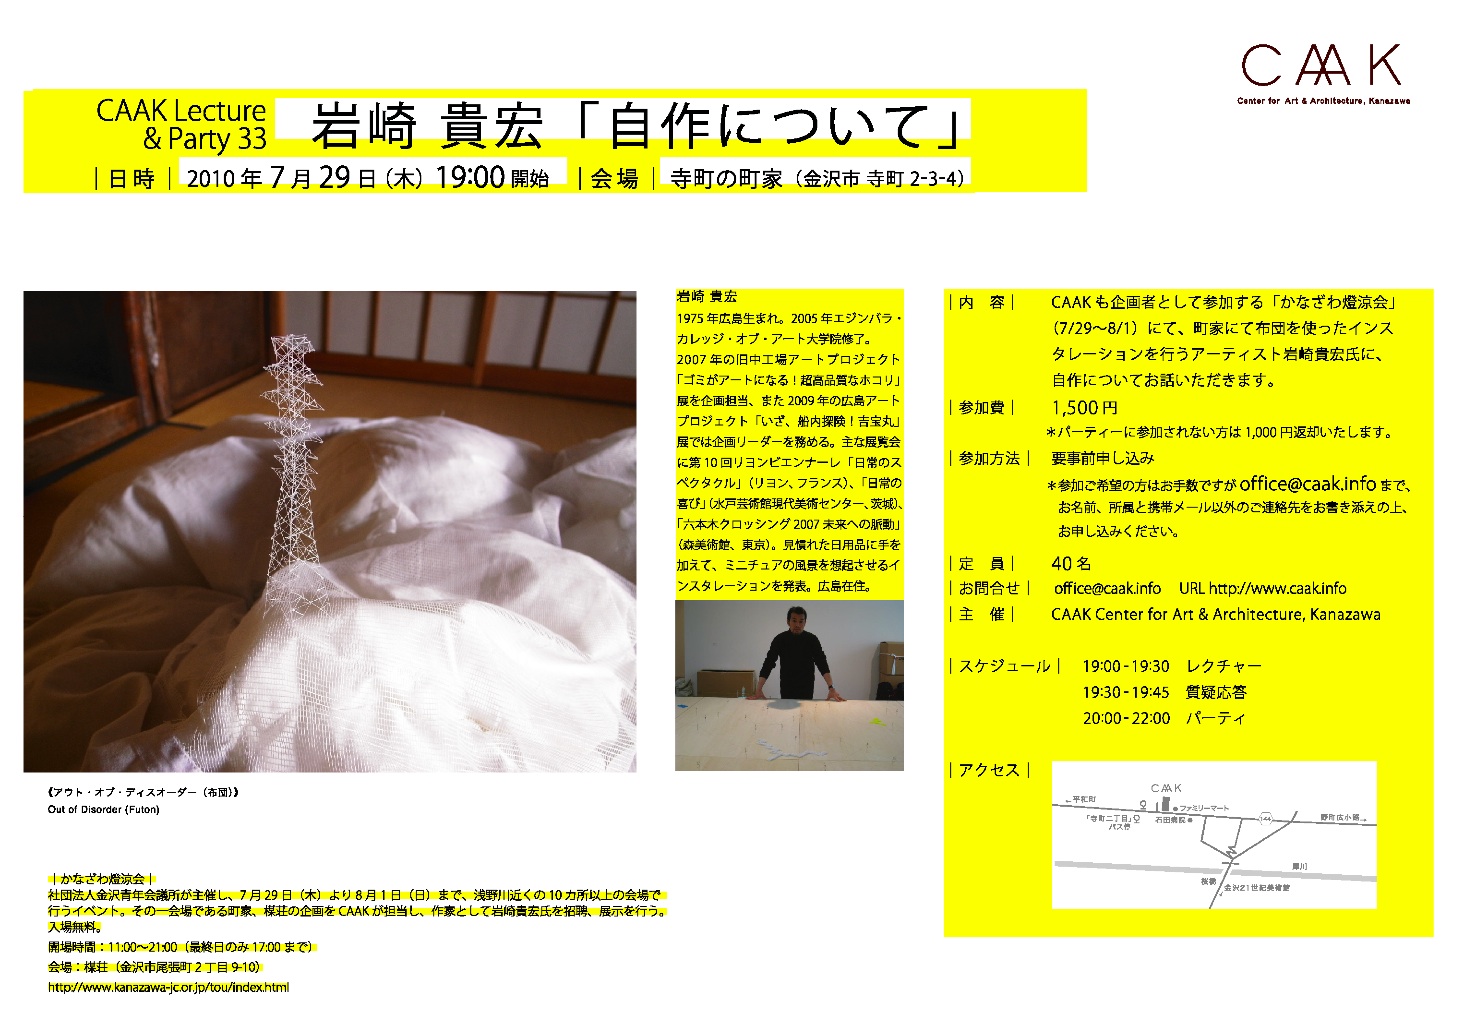 http://www.caak.info/jp/assets_c/2010/07/flyer_iwasaki-thumb-1458x1032-78.jpg